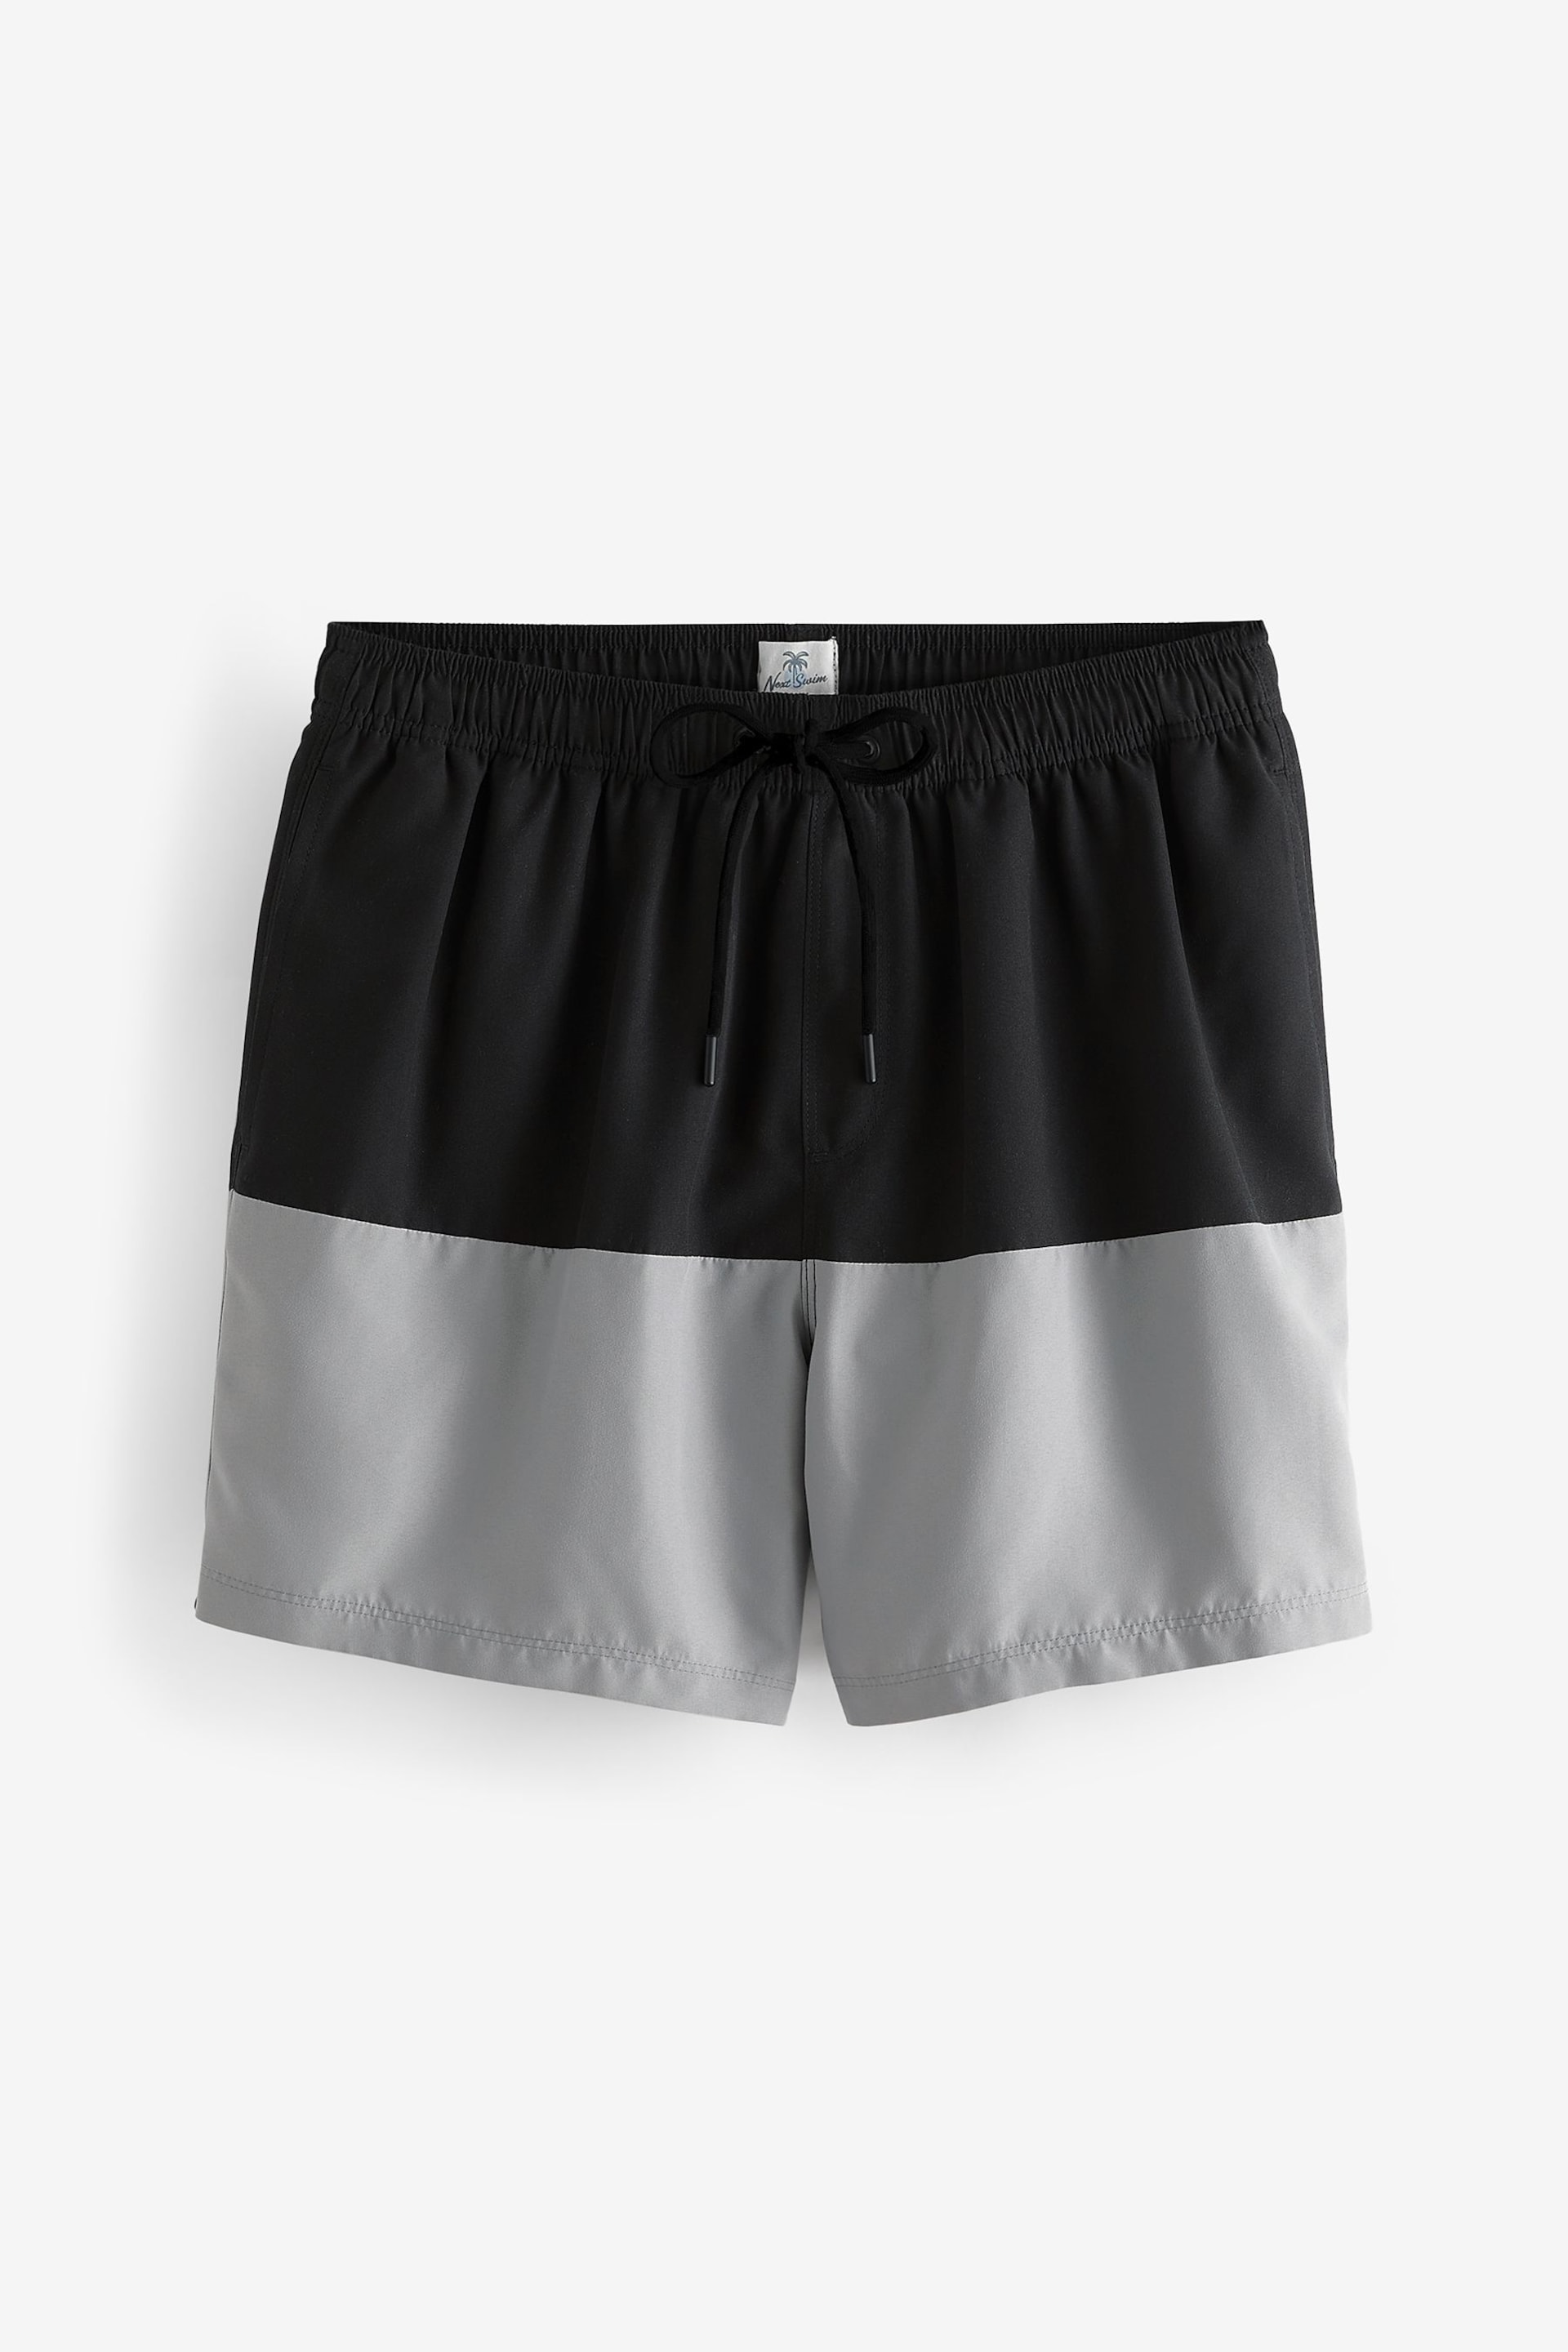 Black/Grey 50/50 Swim Shorts - Image 7 of 12